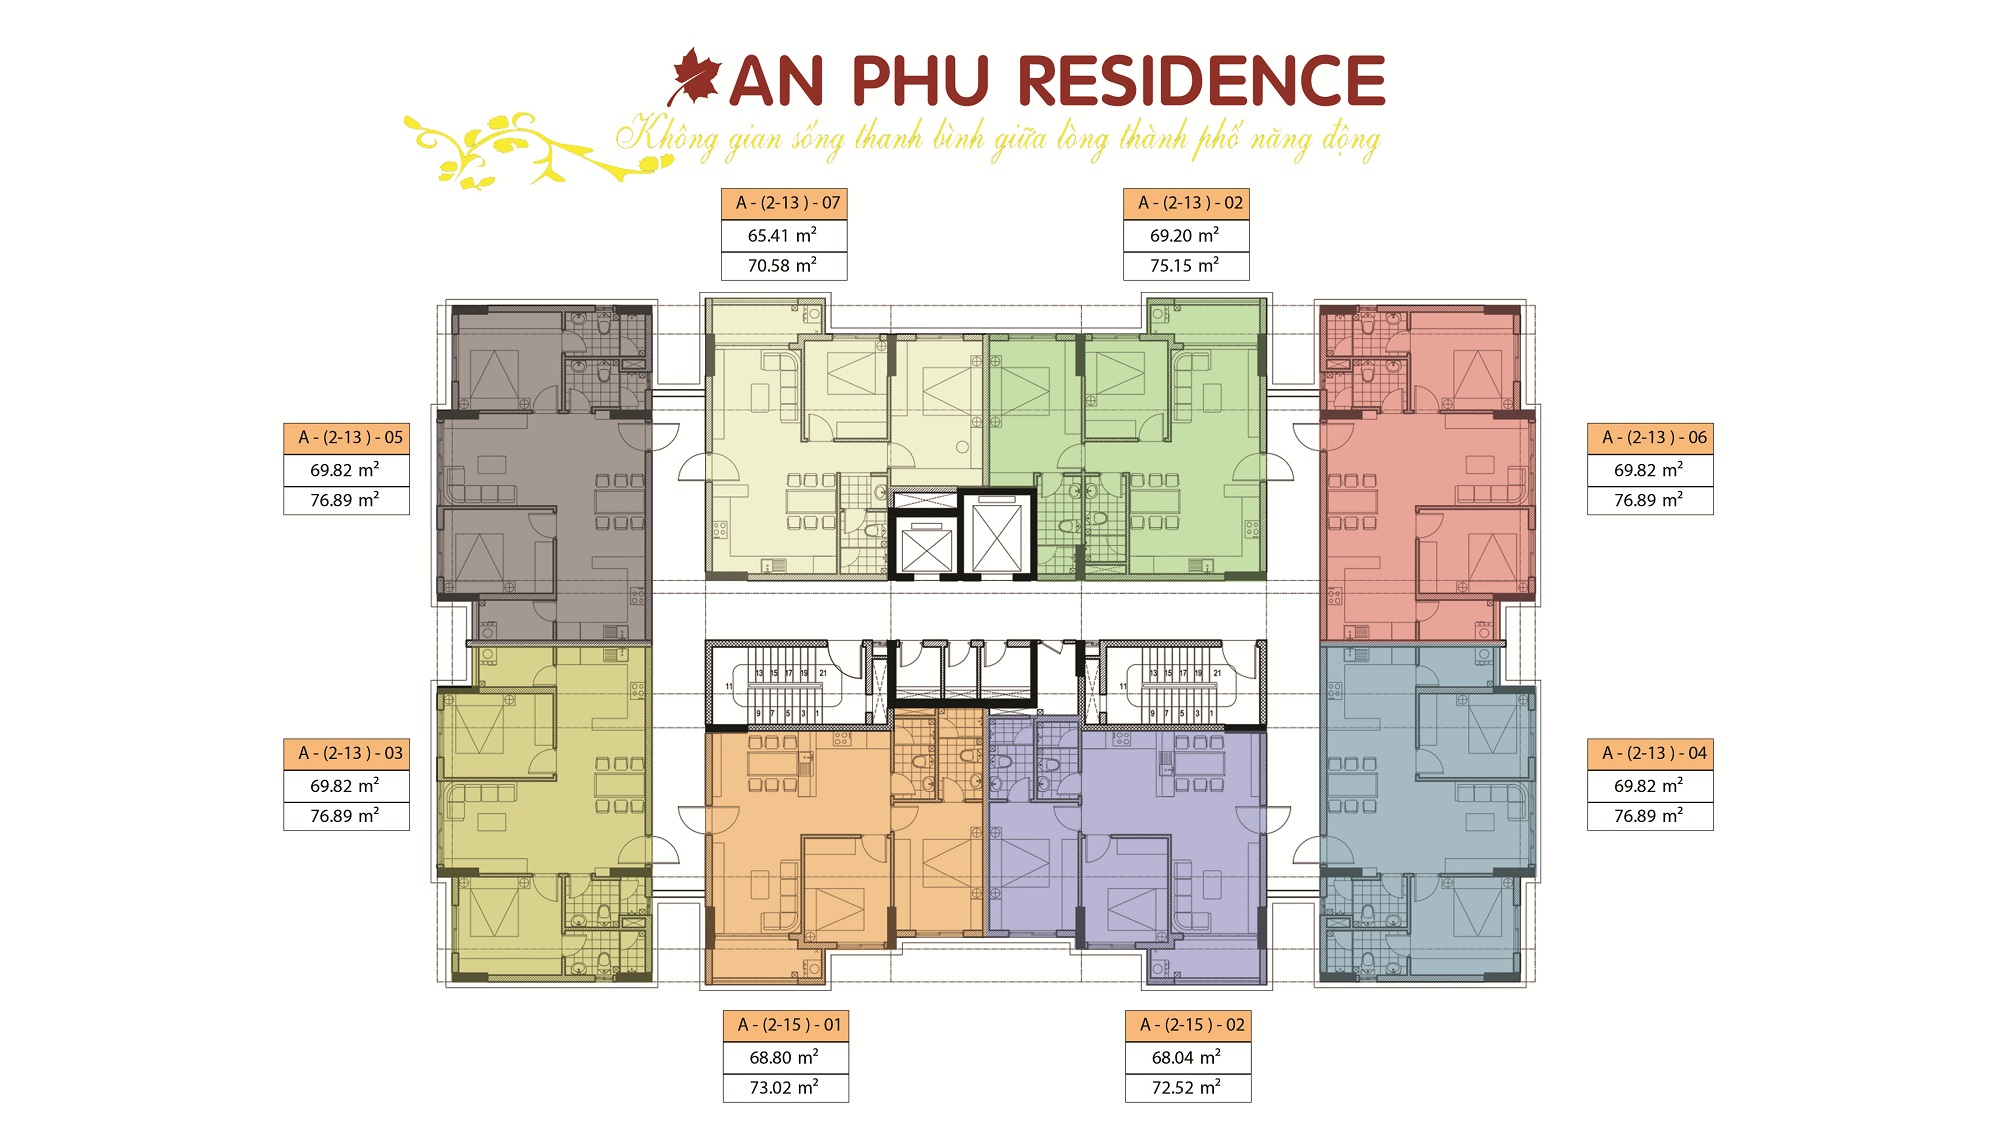 Mặt bằng căn hộ chung cư An Phú Residence tầng 2 - 12